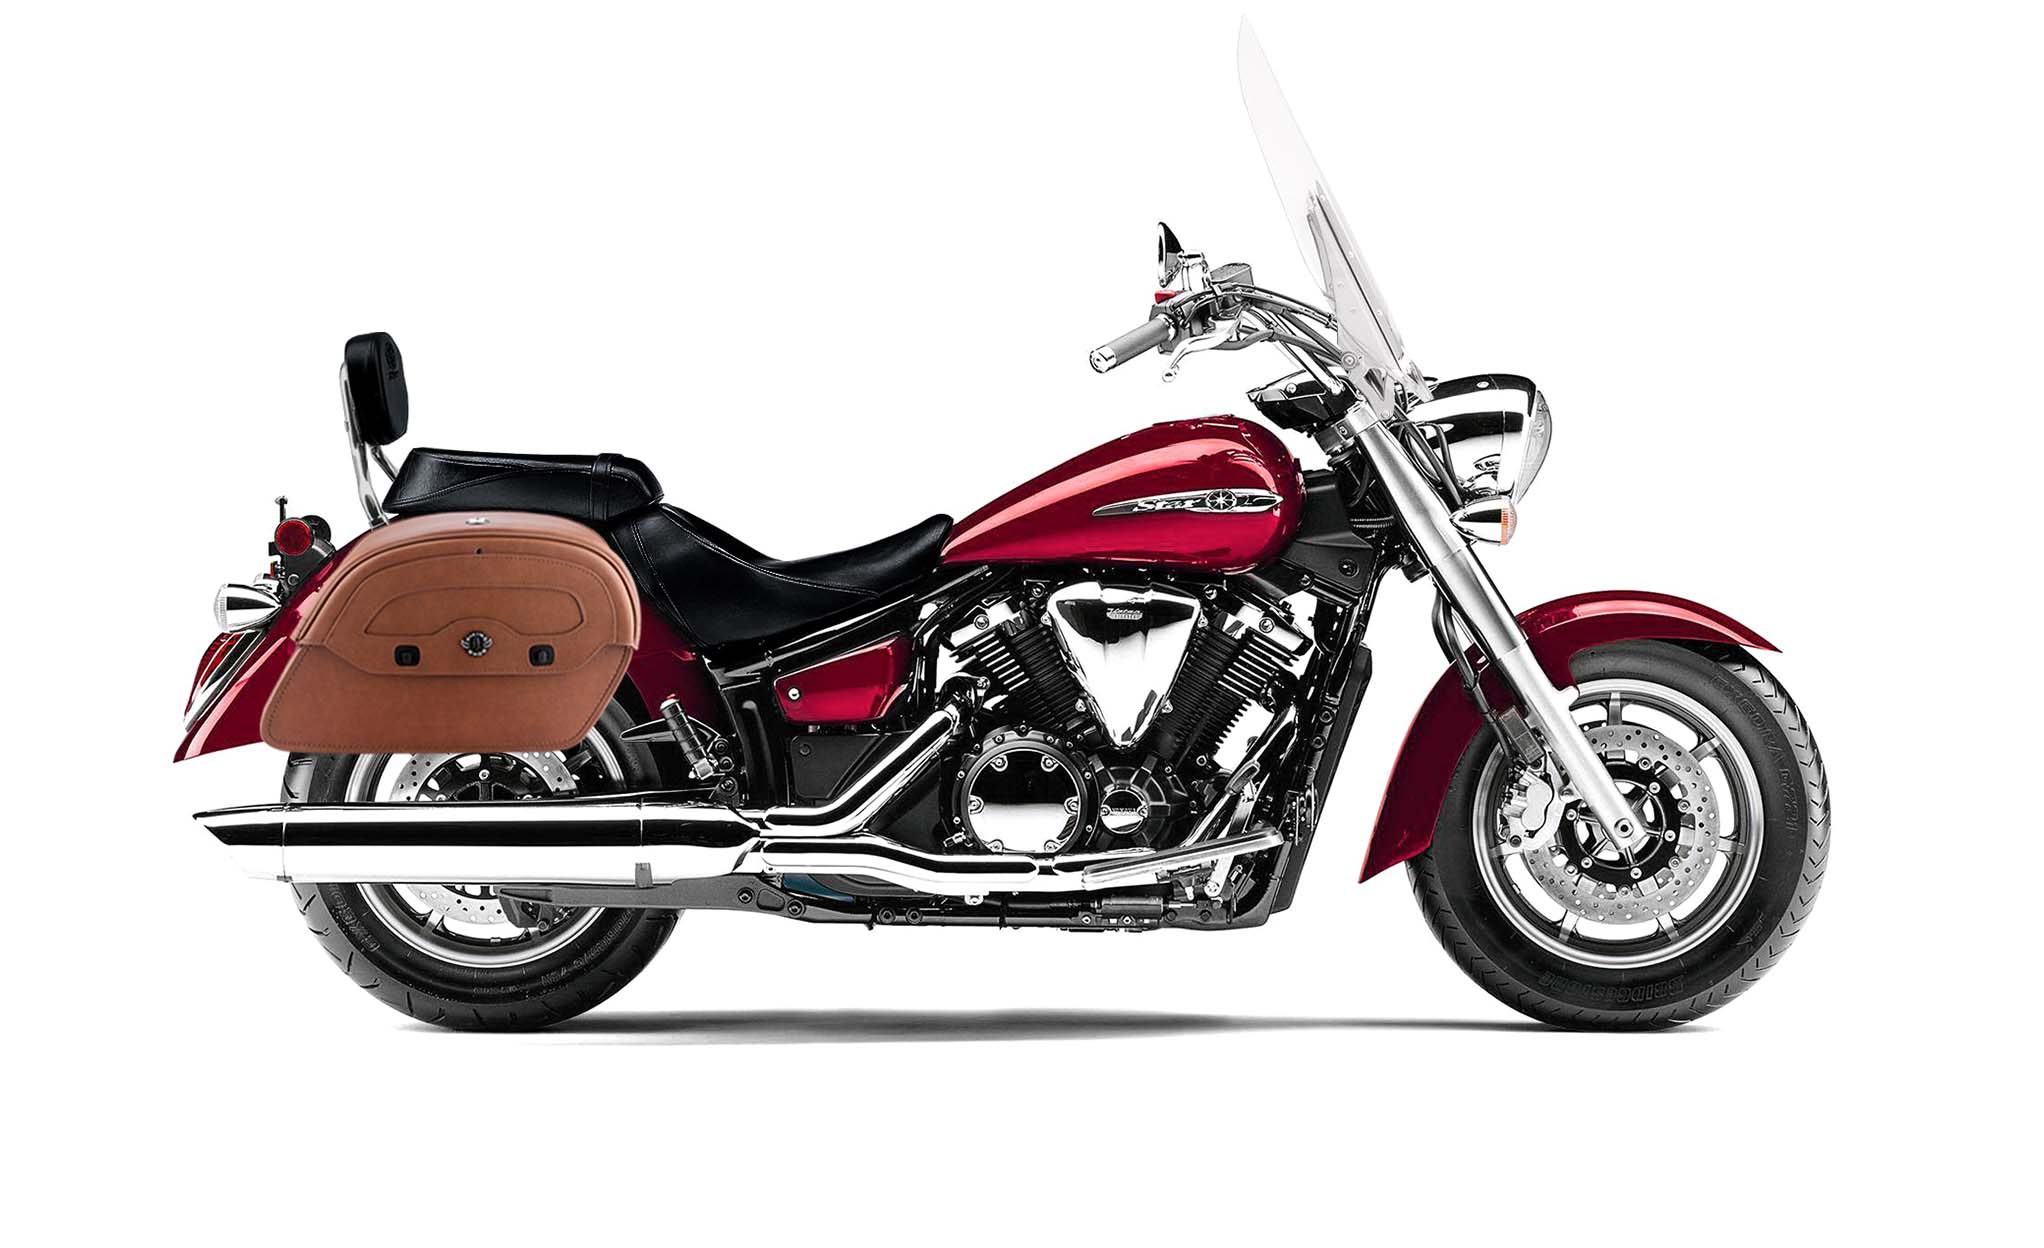 Viking Warrior Brown Large Yamaha V Star 1300 Tourer Leather Motorcycle Saddlebags on Bike Photo @expand